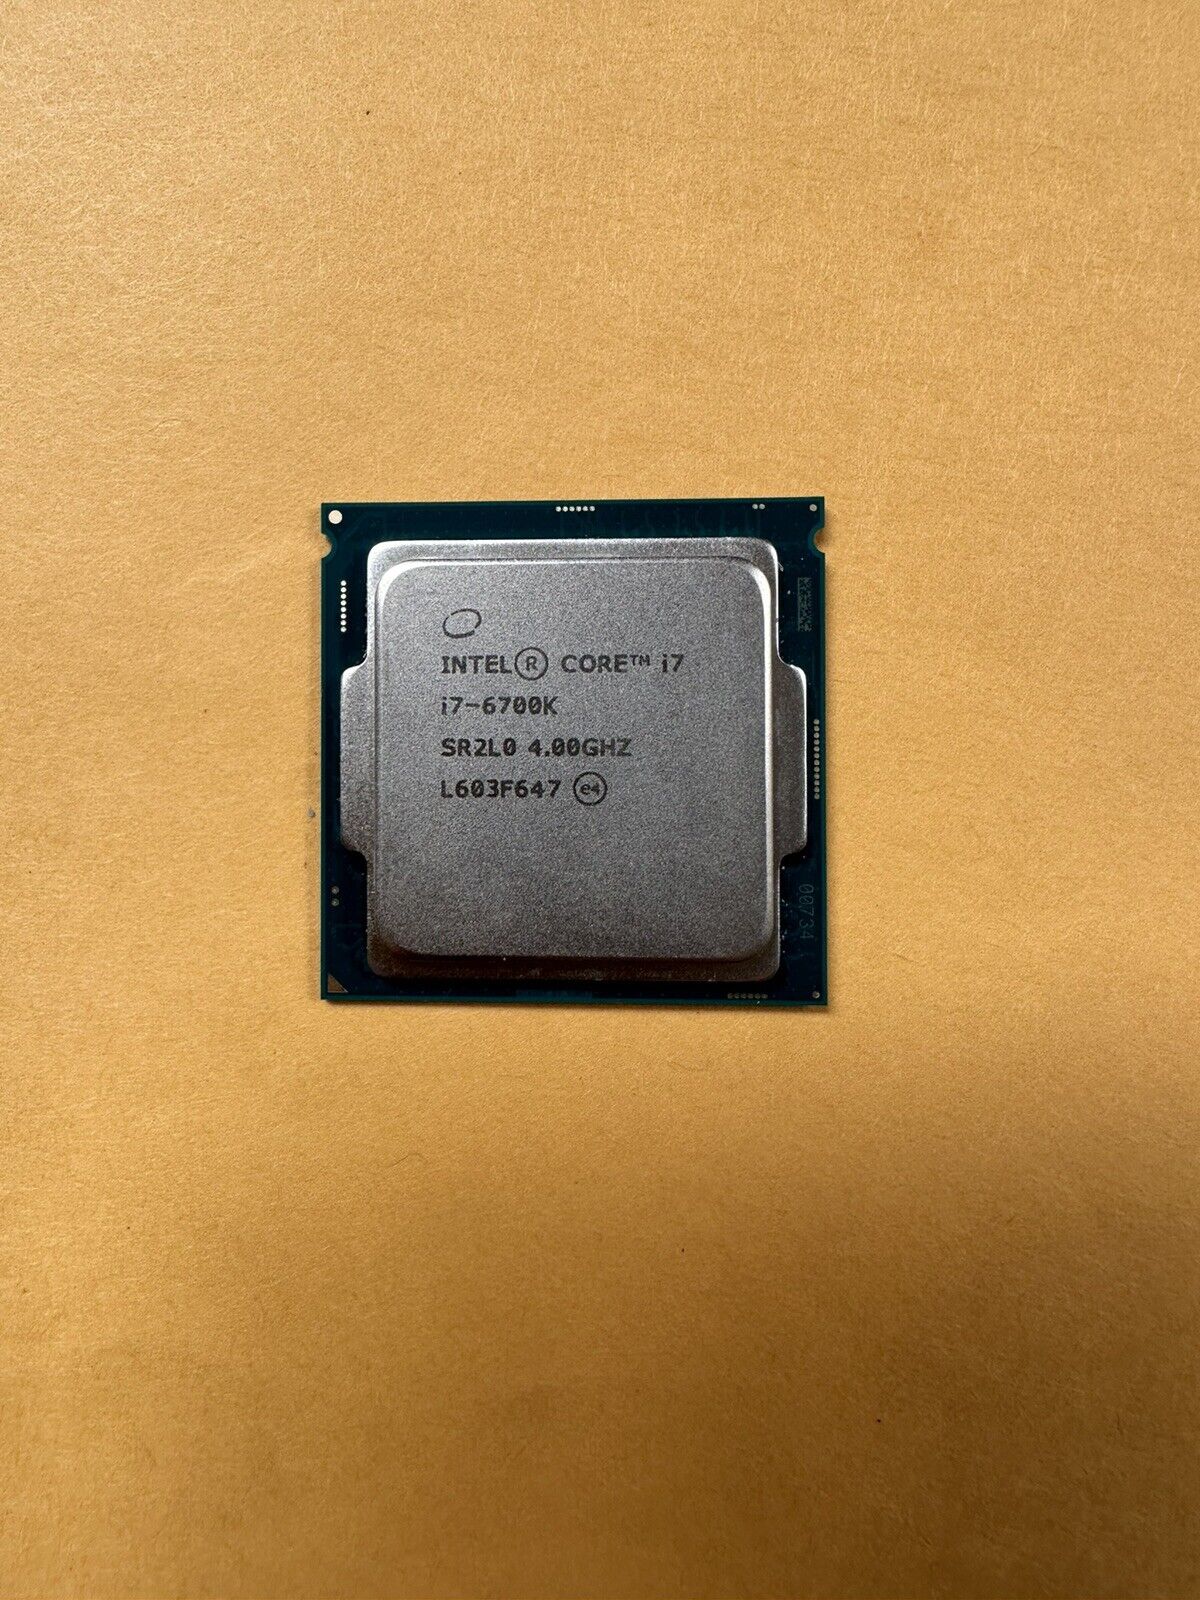 Intel Core i7-6700K SR2L0 4.0GHz Quad Core LGA 1151 Desktop CPU Processor